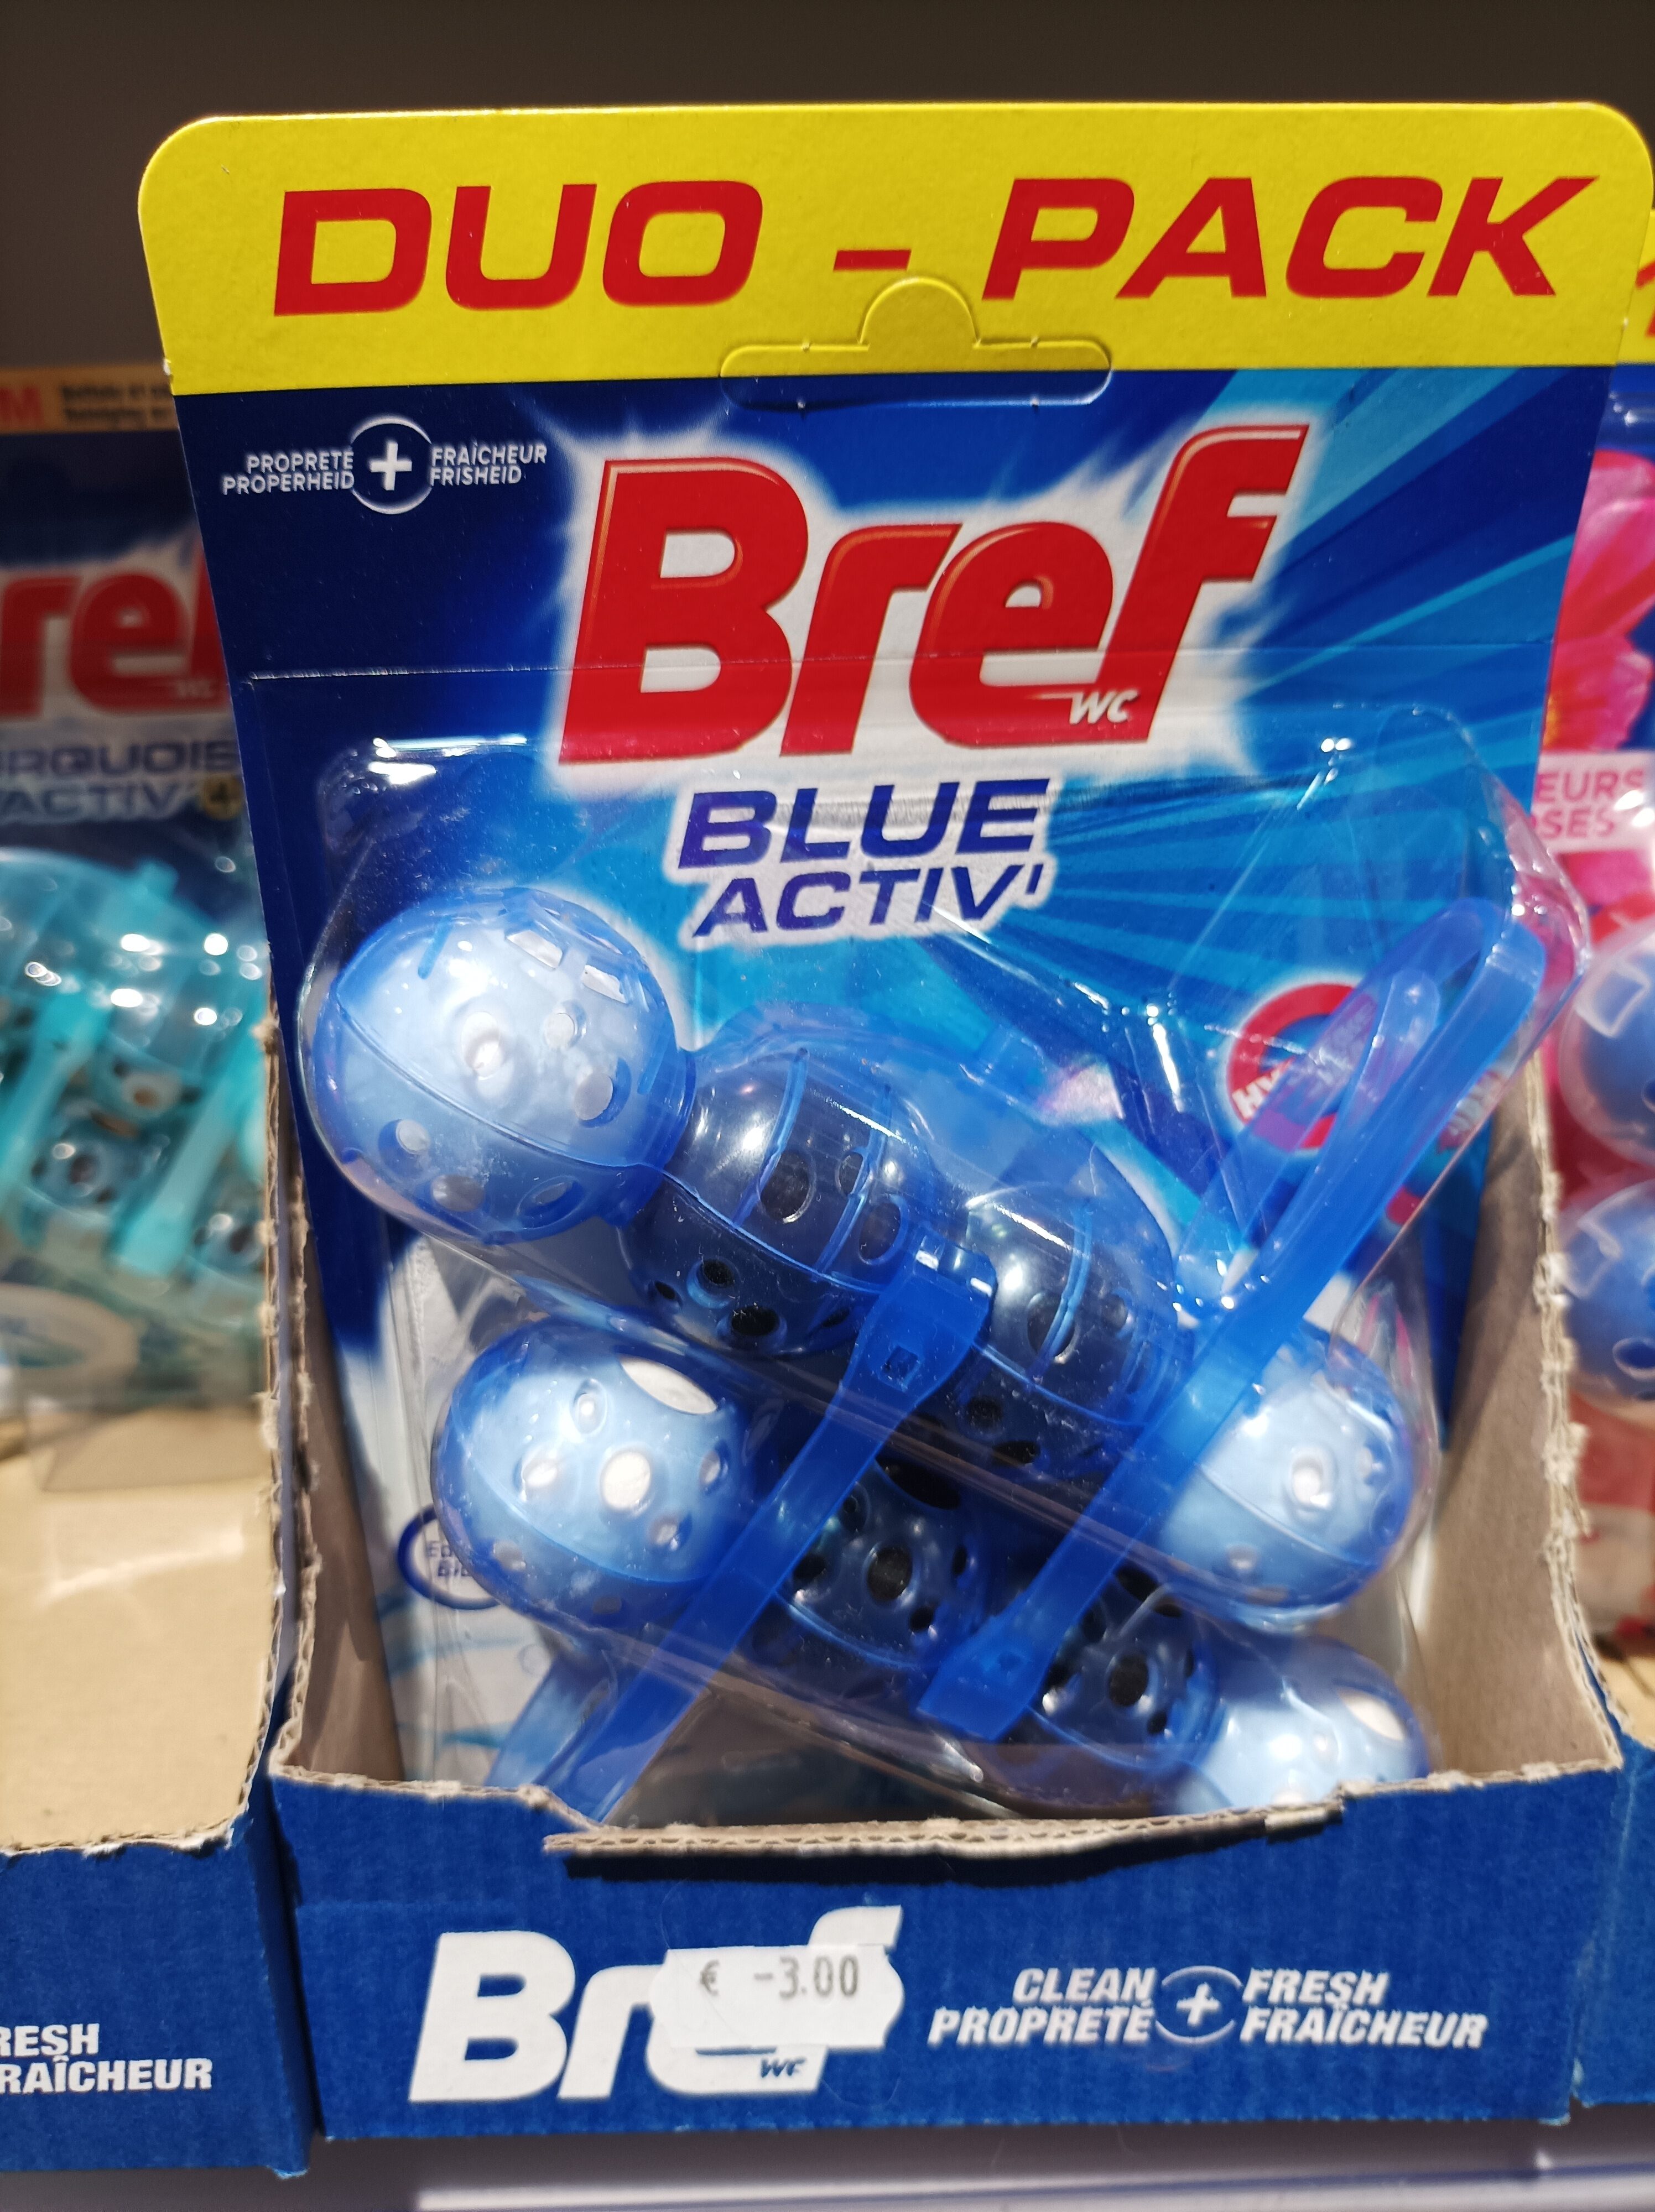 Bref Blue activ' - Product - fr